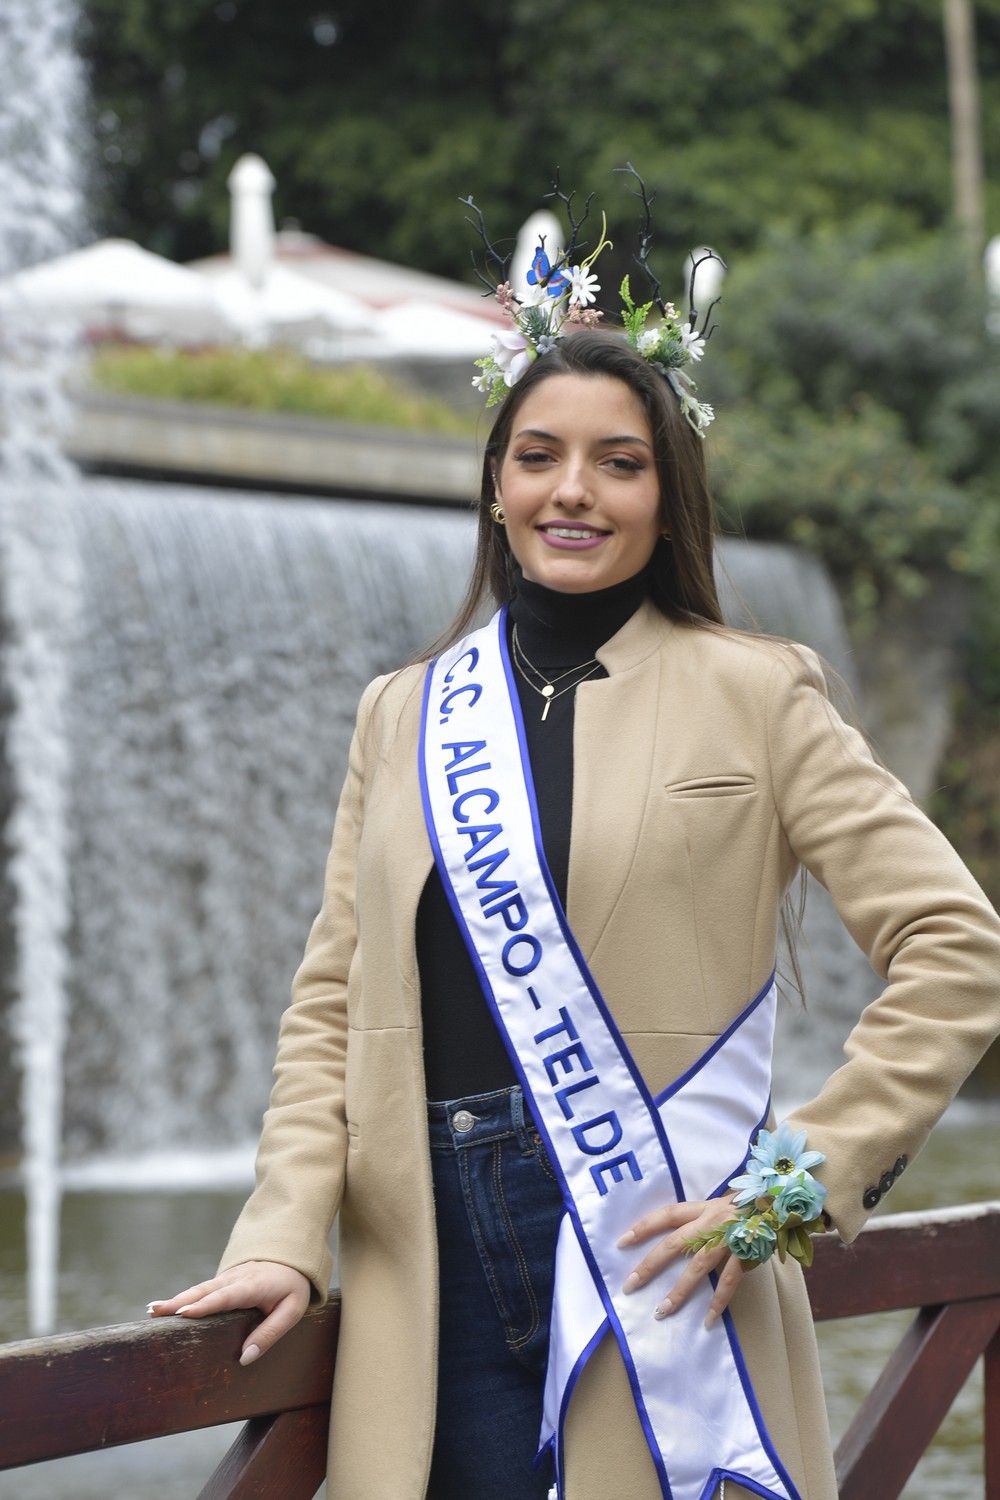 Candidatas a Reina del Carnaval de Las Palmas de Gran Canaria: Judith del Pino Matías (Centro Comercial Alcampo)